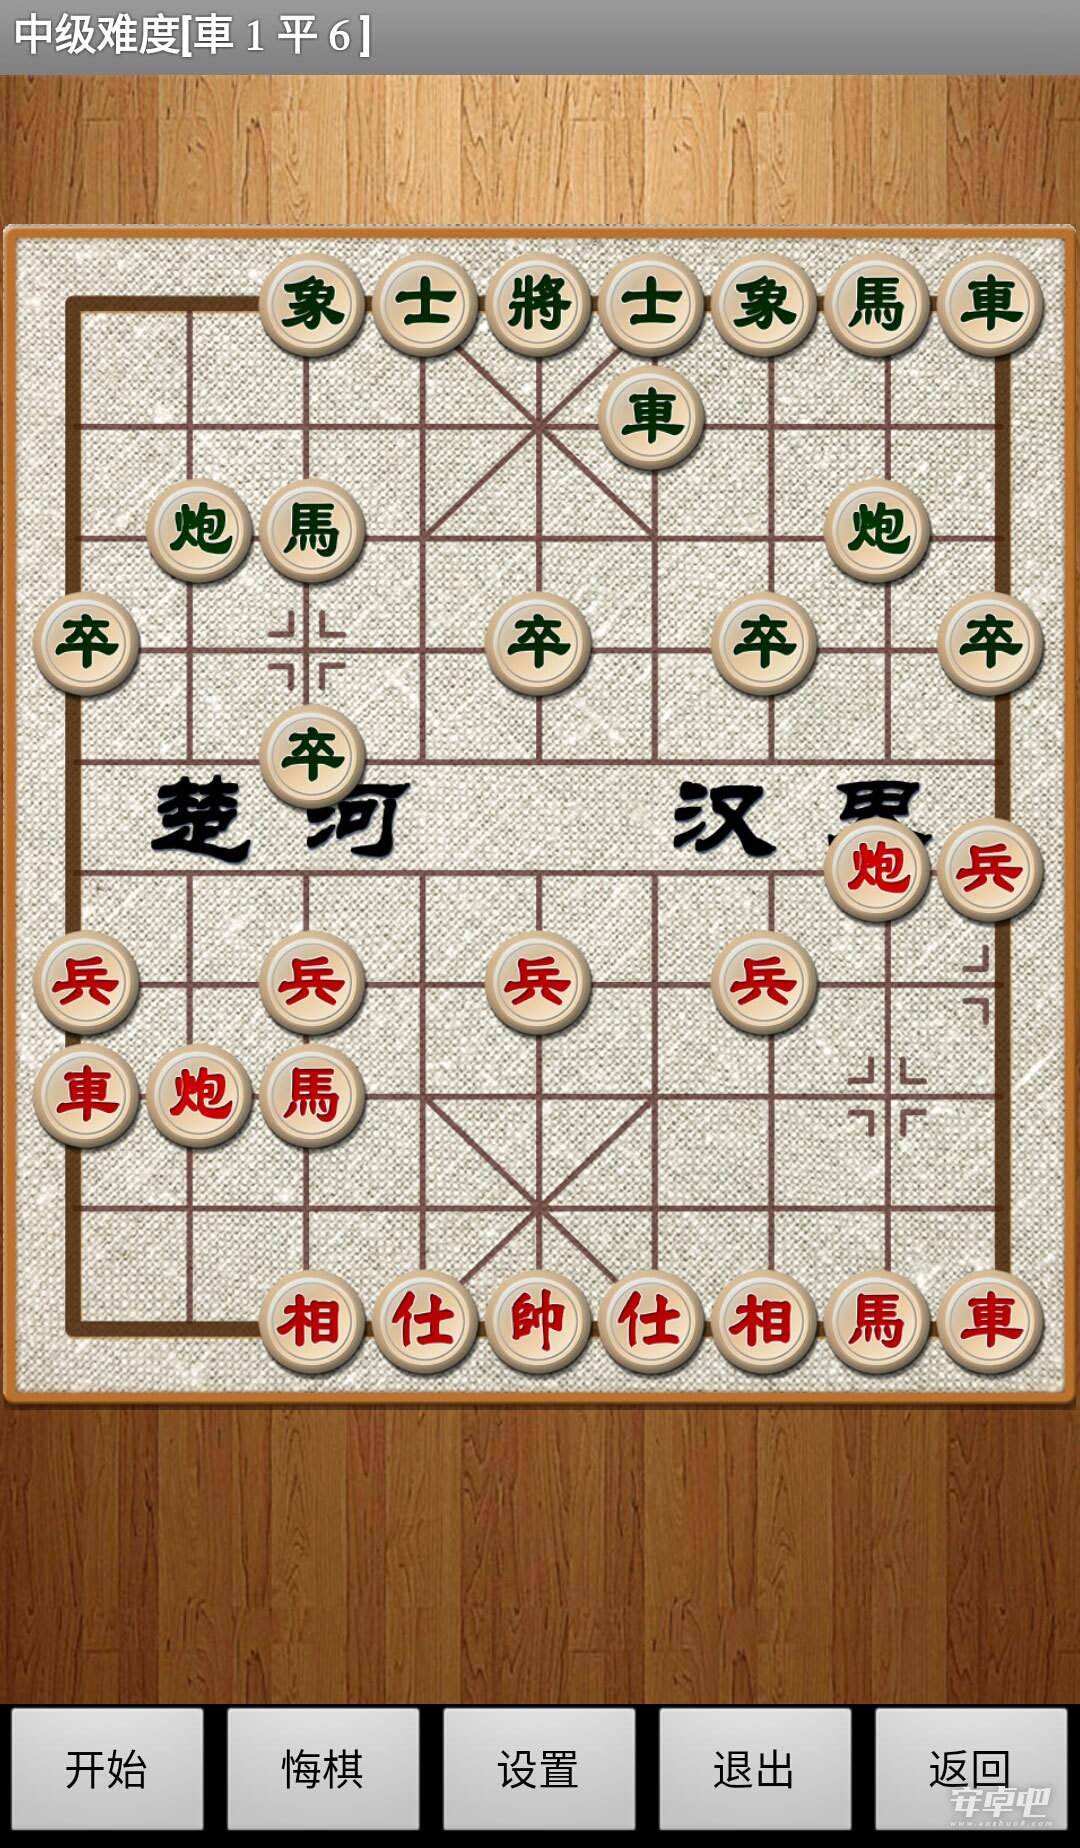 经典中国象棋3